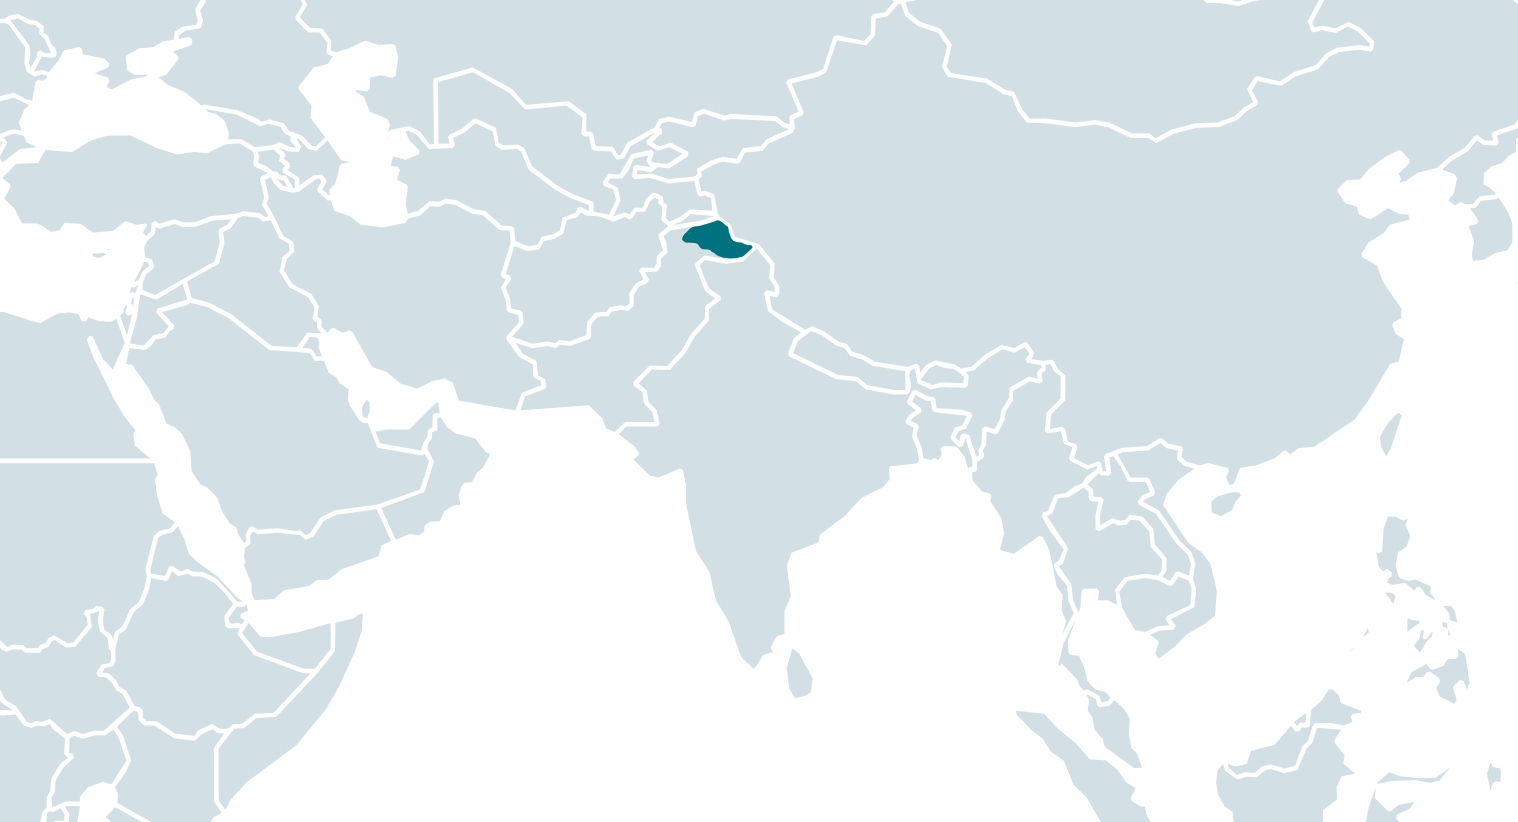 Uheldig Kamran: Android malware spionerer på urdu-talende indbyggere i Gilgit-Baltistan